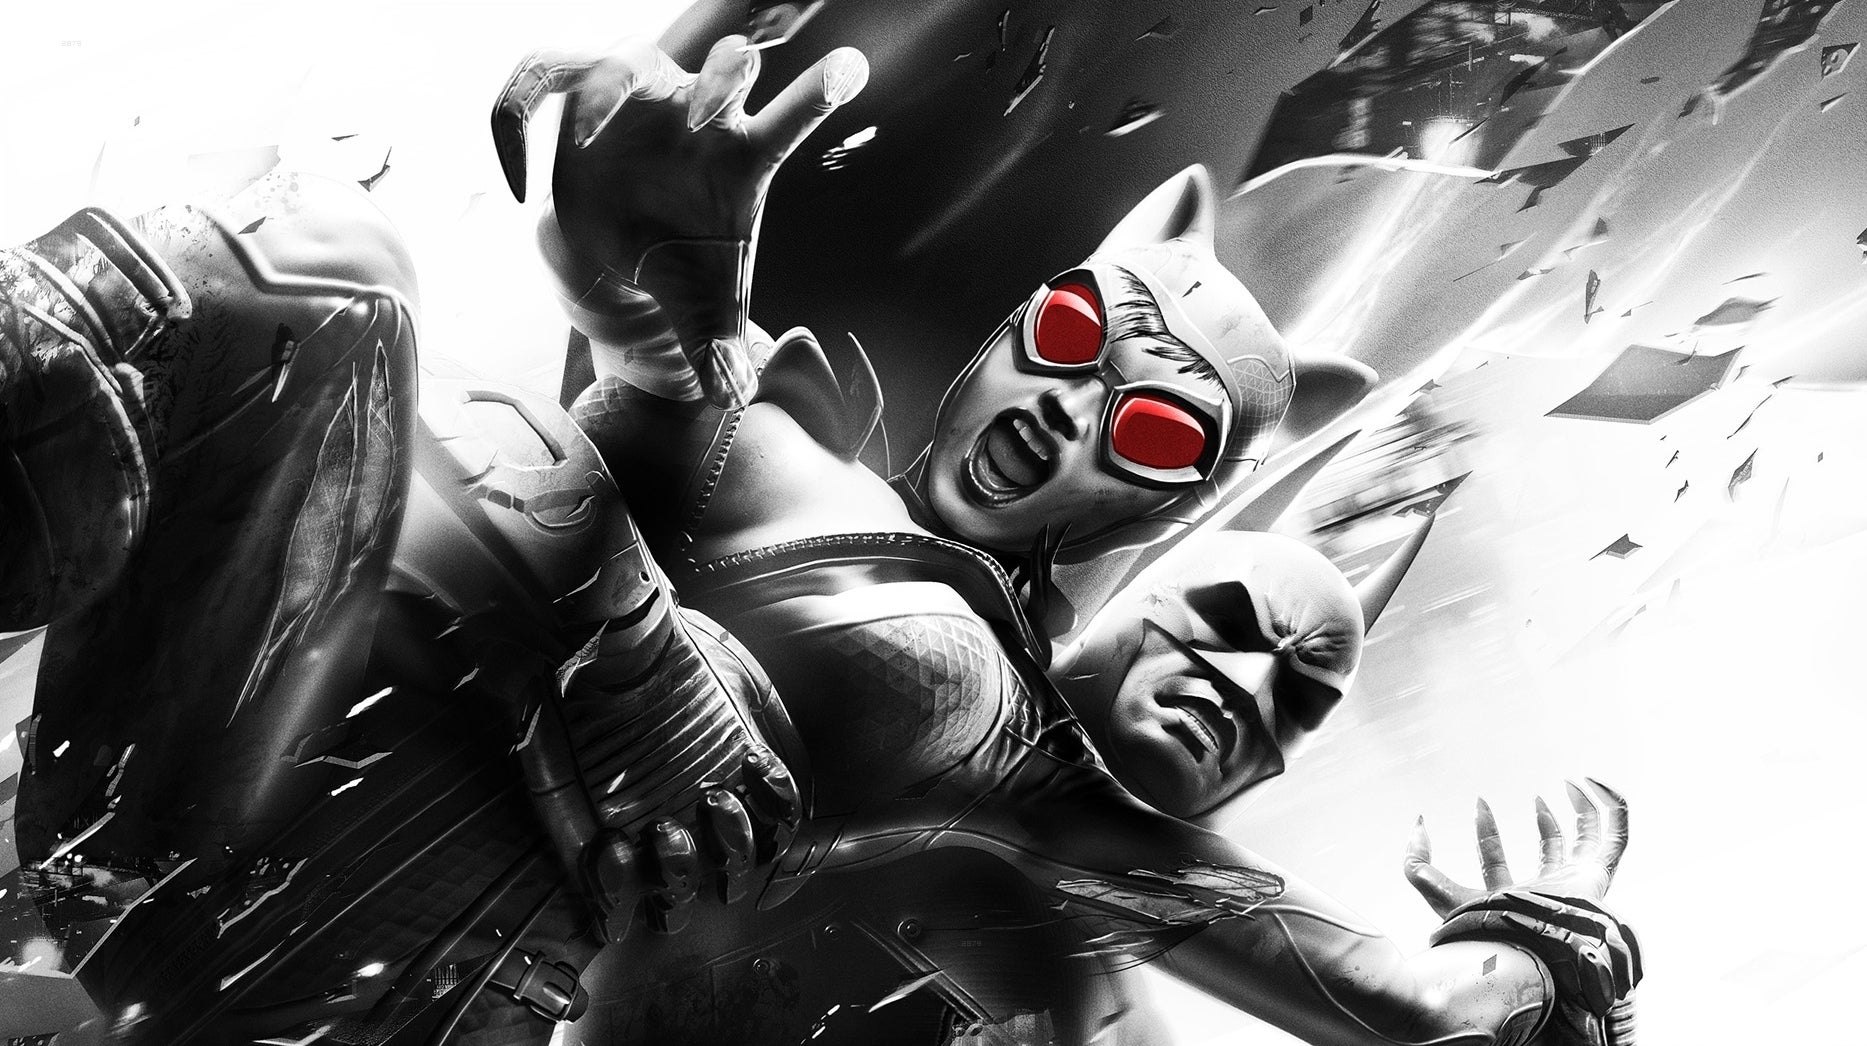 Afbeeldingen van Batman: Arkham City 12,5 miljoen keer verkocht in het eerste jaar na de release